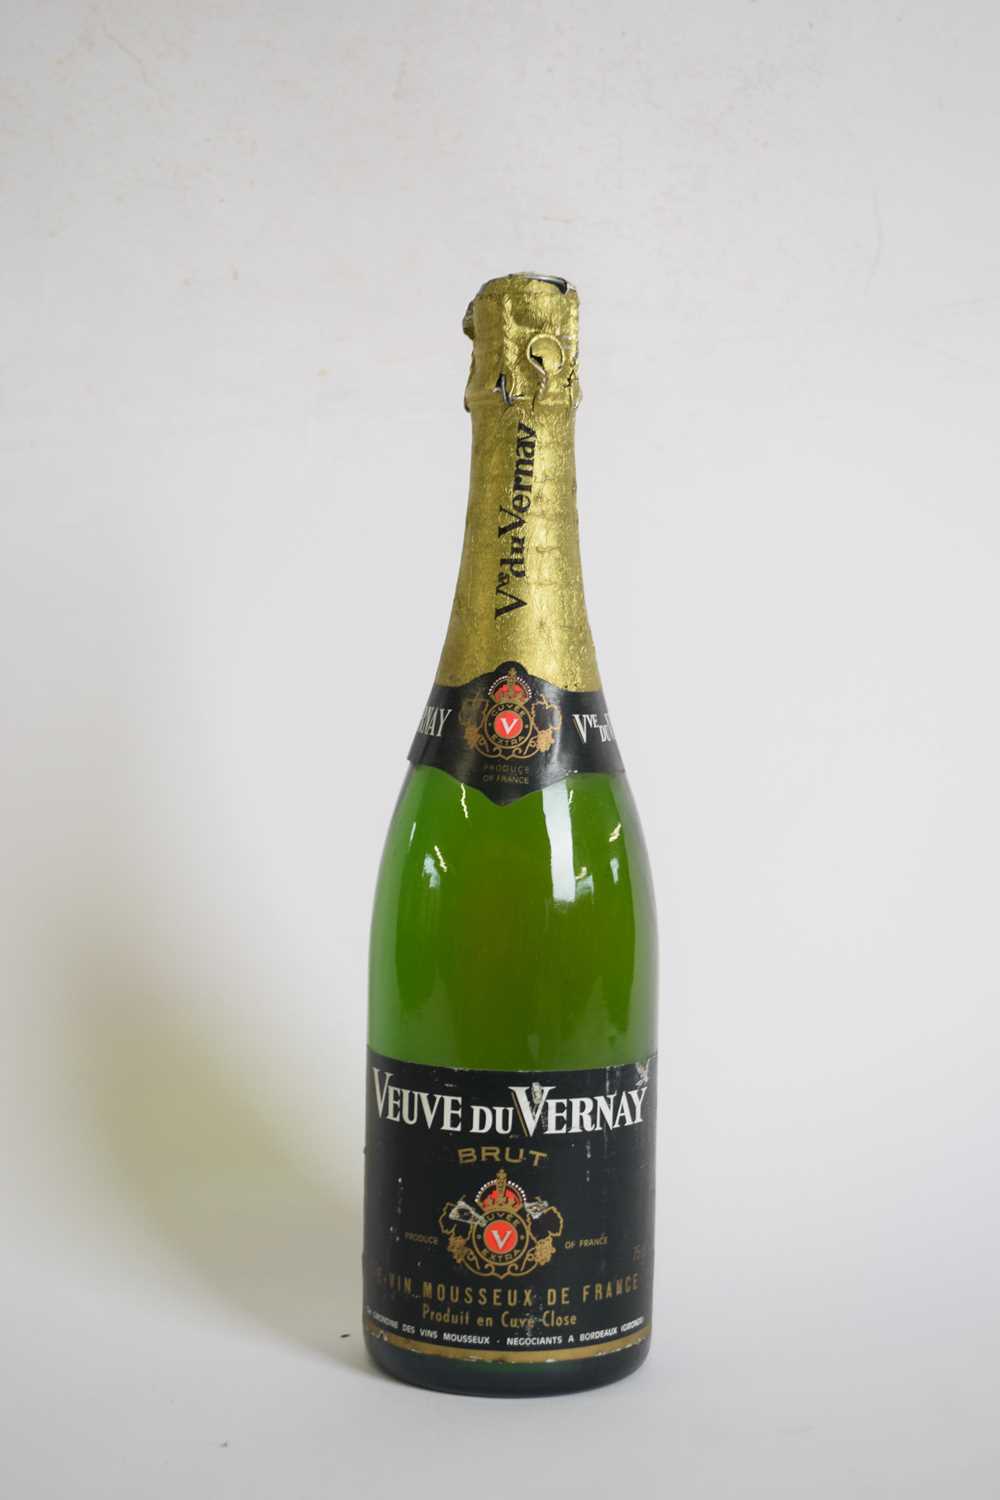 One bottle Veuve du Vernay Brut, 75cl - Image 2 of 2